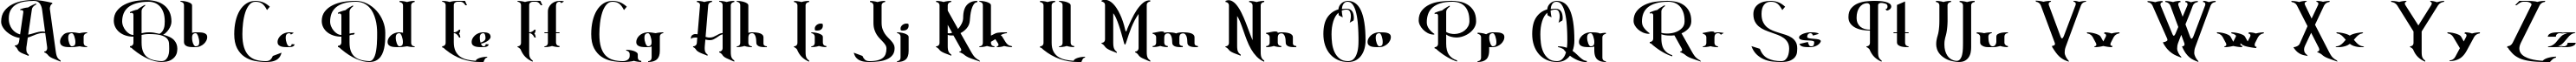 Пример написания английского алфавита шрифтом Erasmus